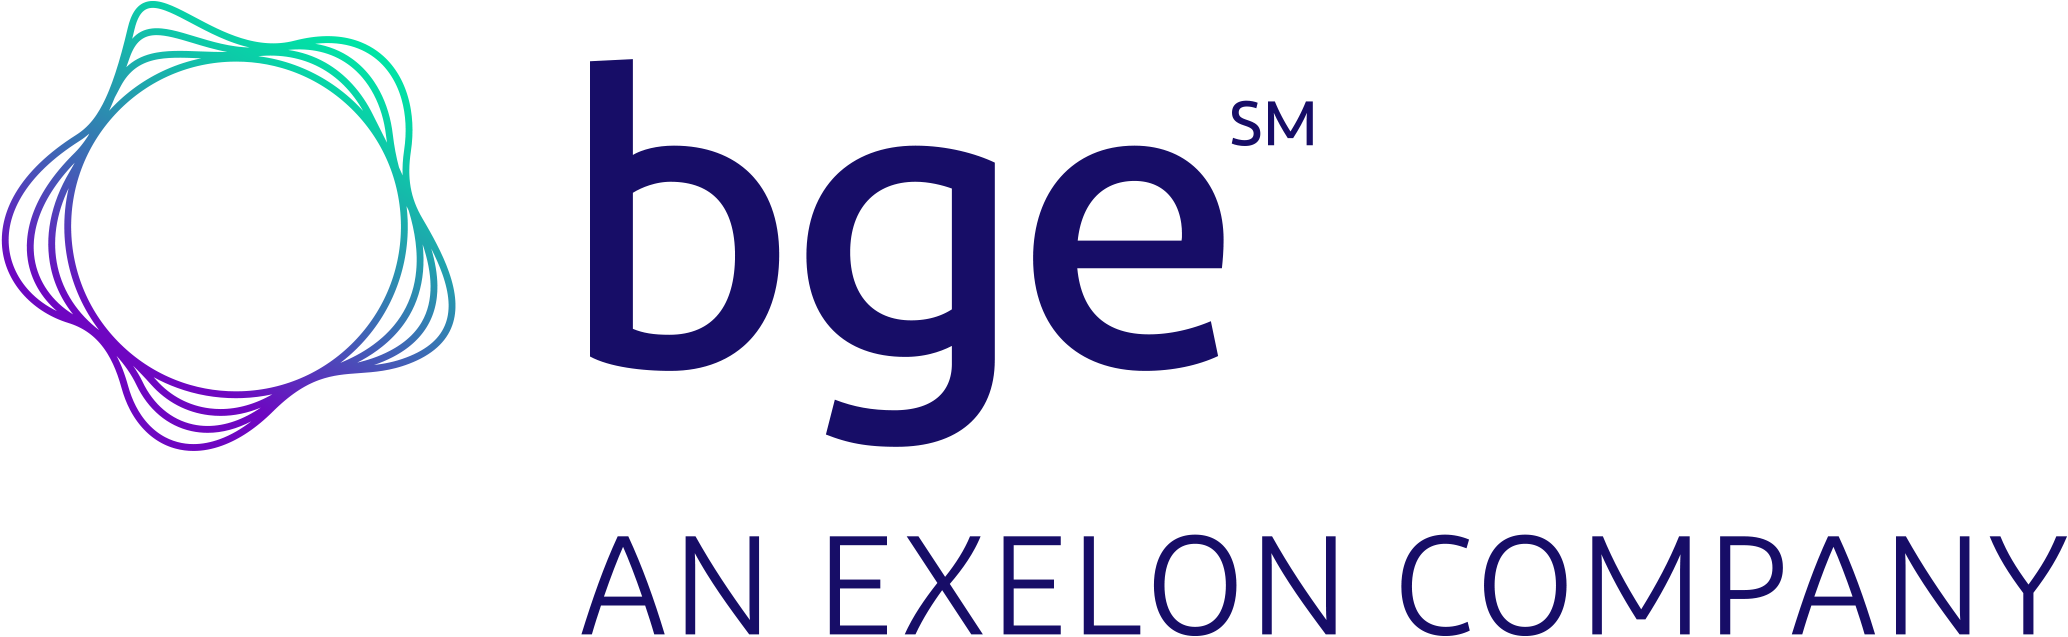 bge An Exelon Company